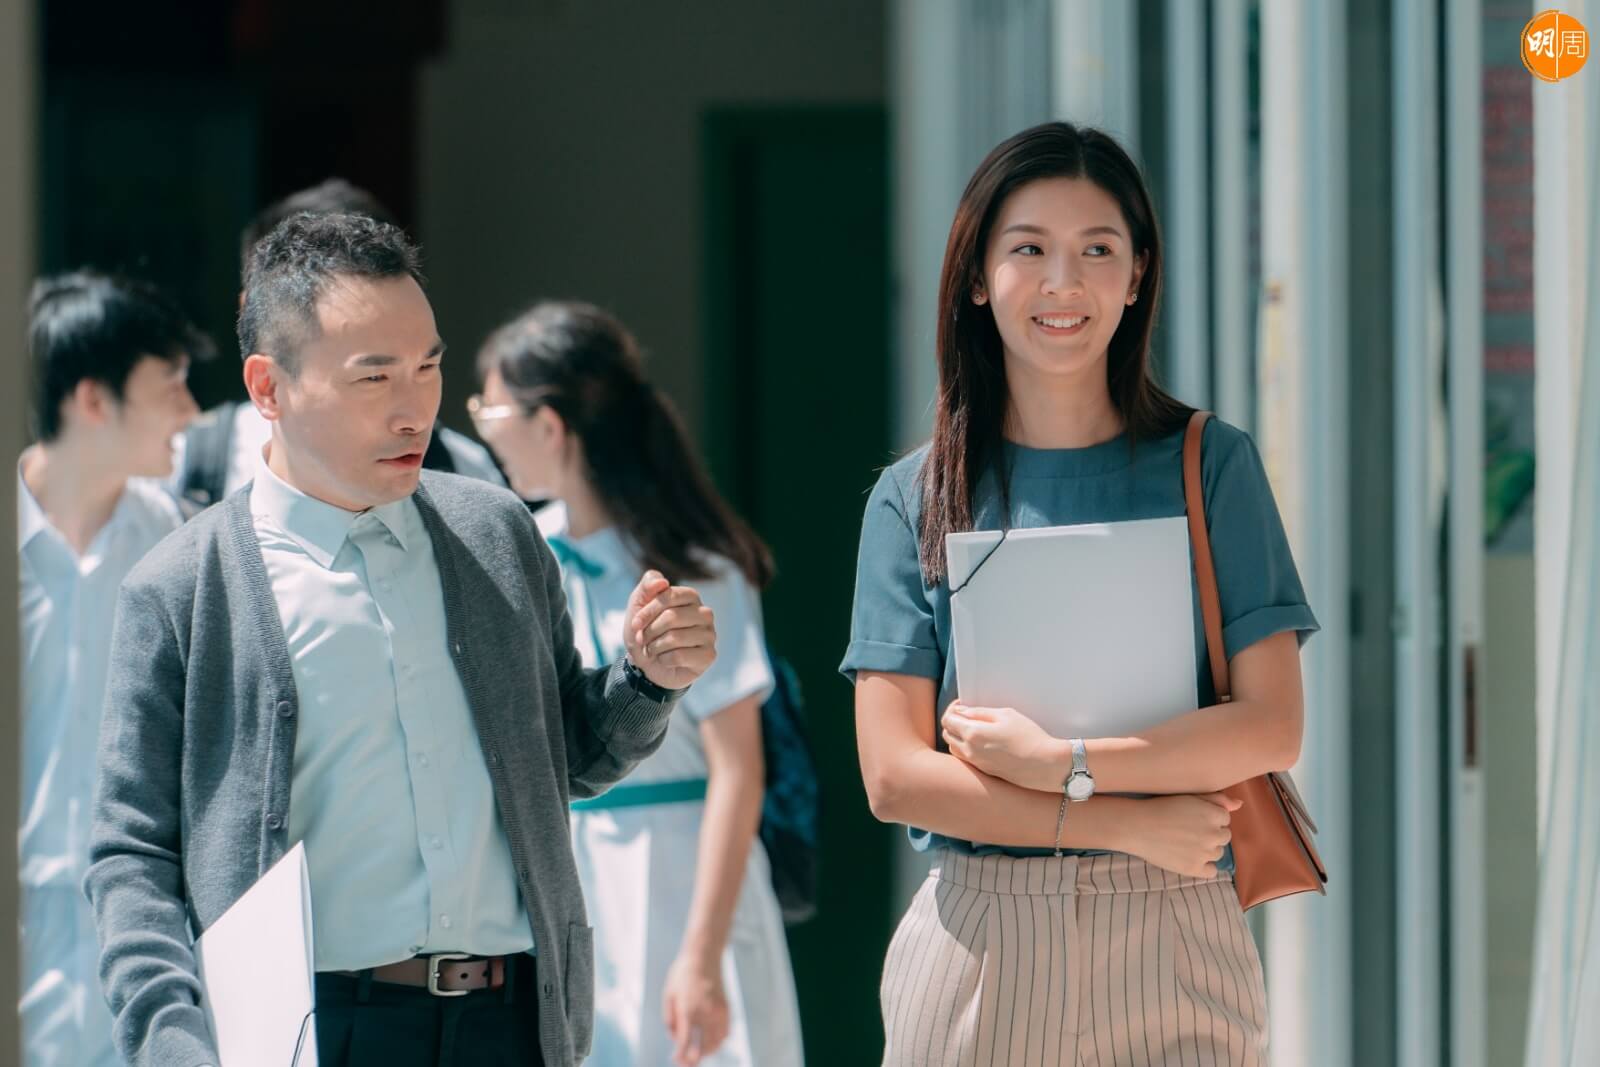 《心裏美》故事以香港教育為切入點，反映本地師生每天面對的巨大挑戰和矛盾。